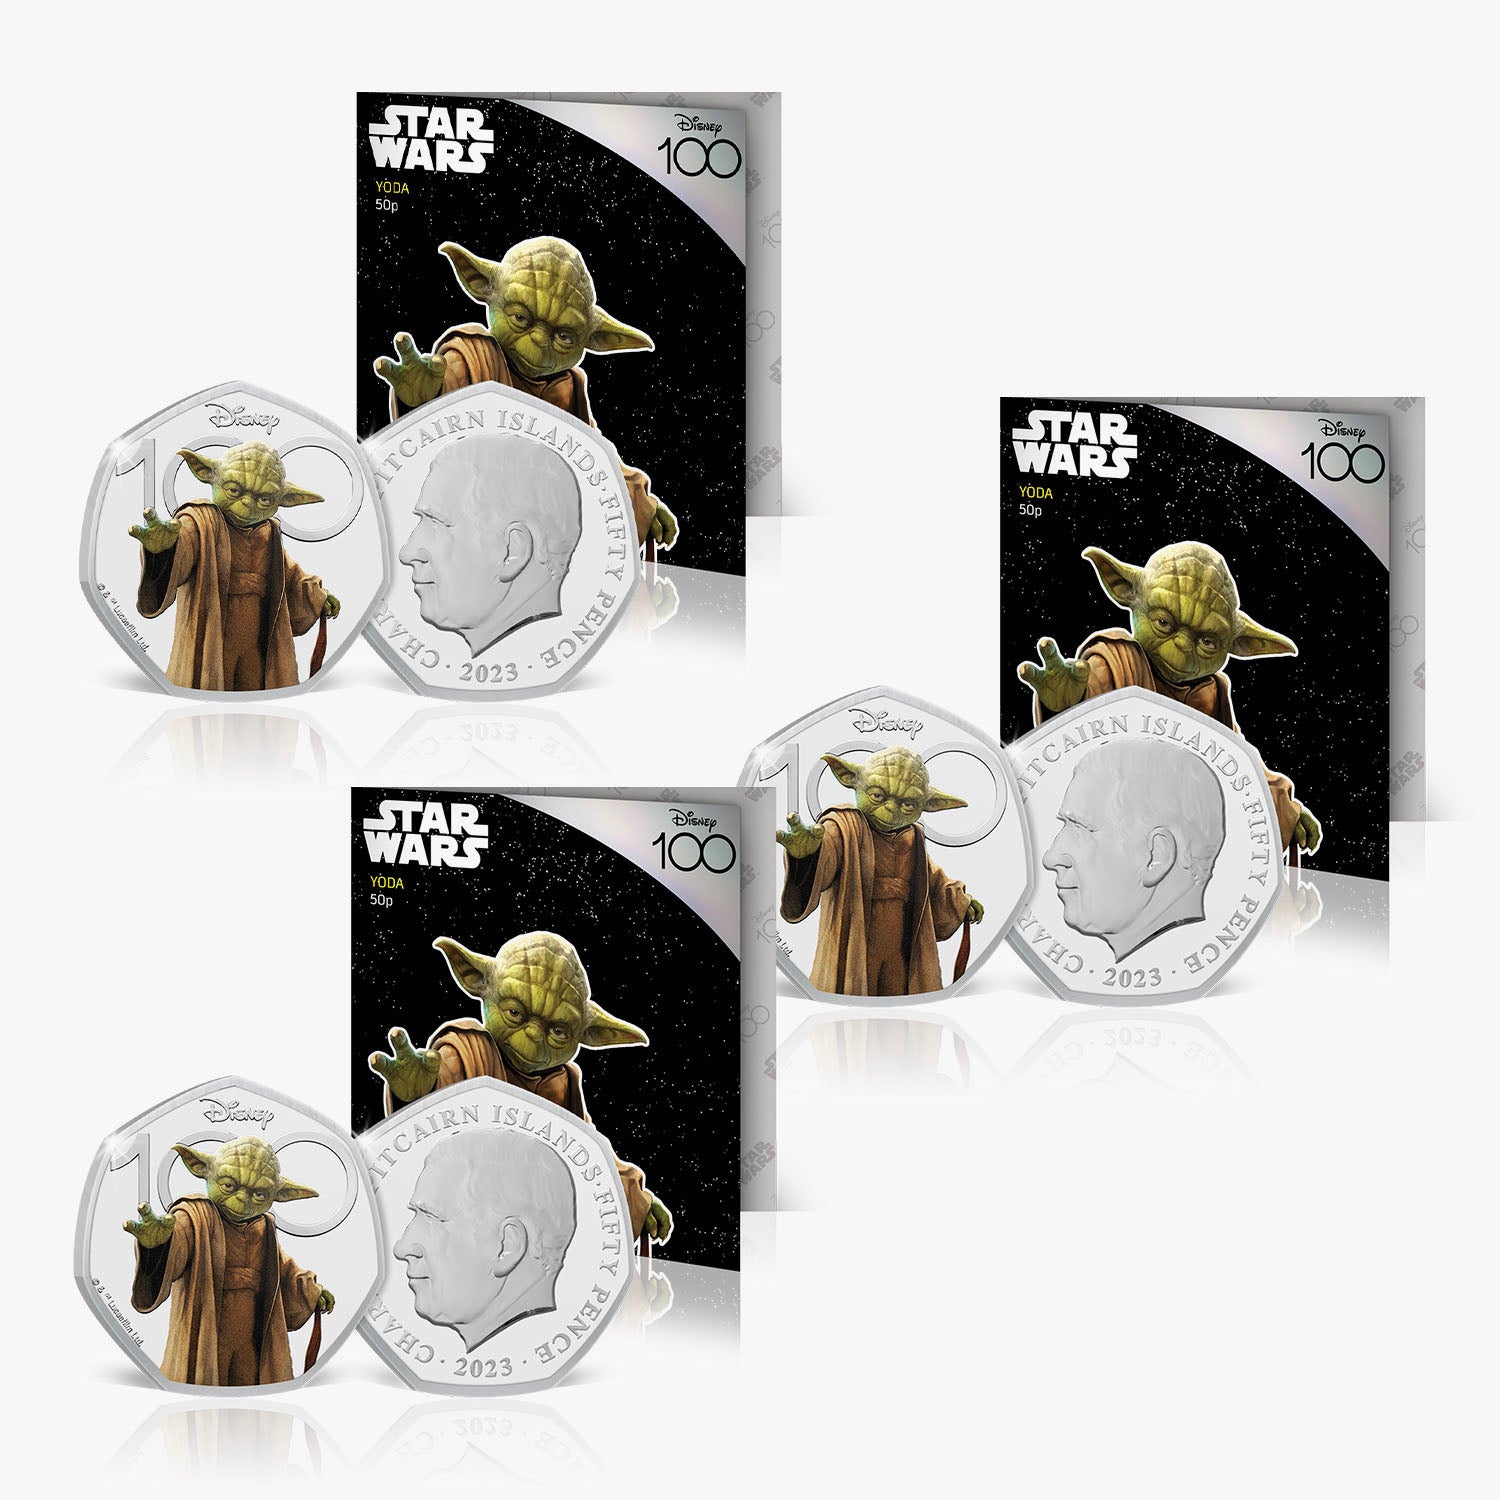 D100 Yoda Official BU 50p with Colour Bundle